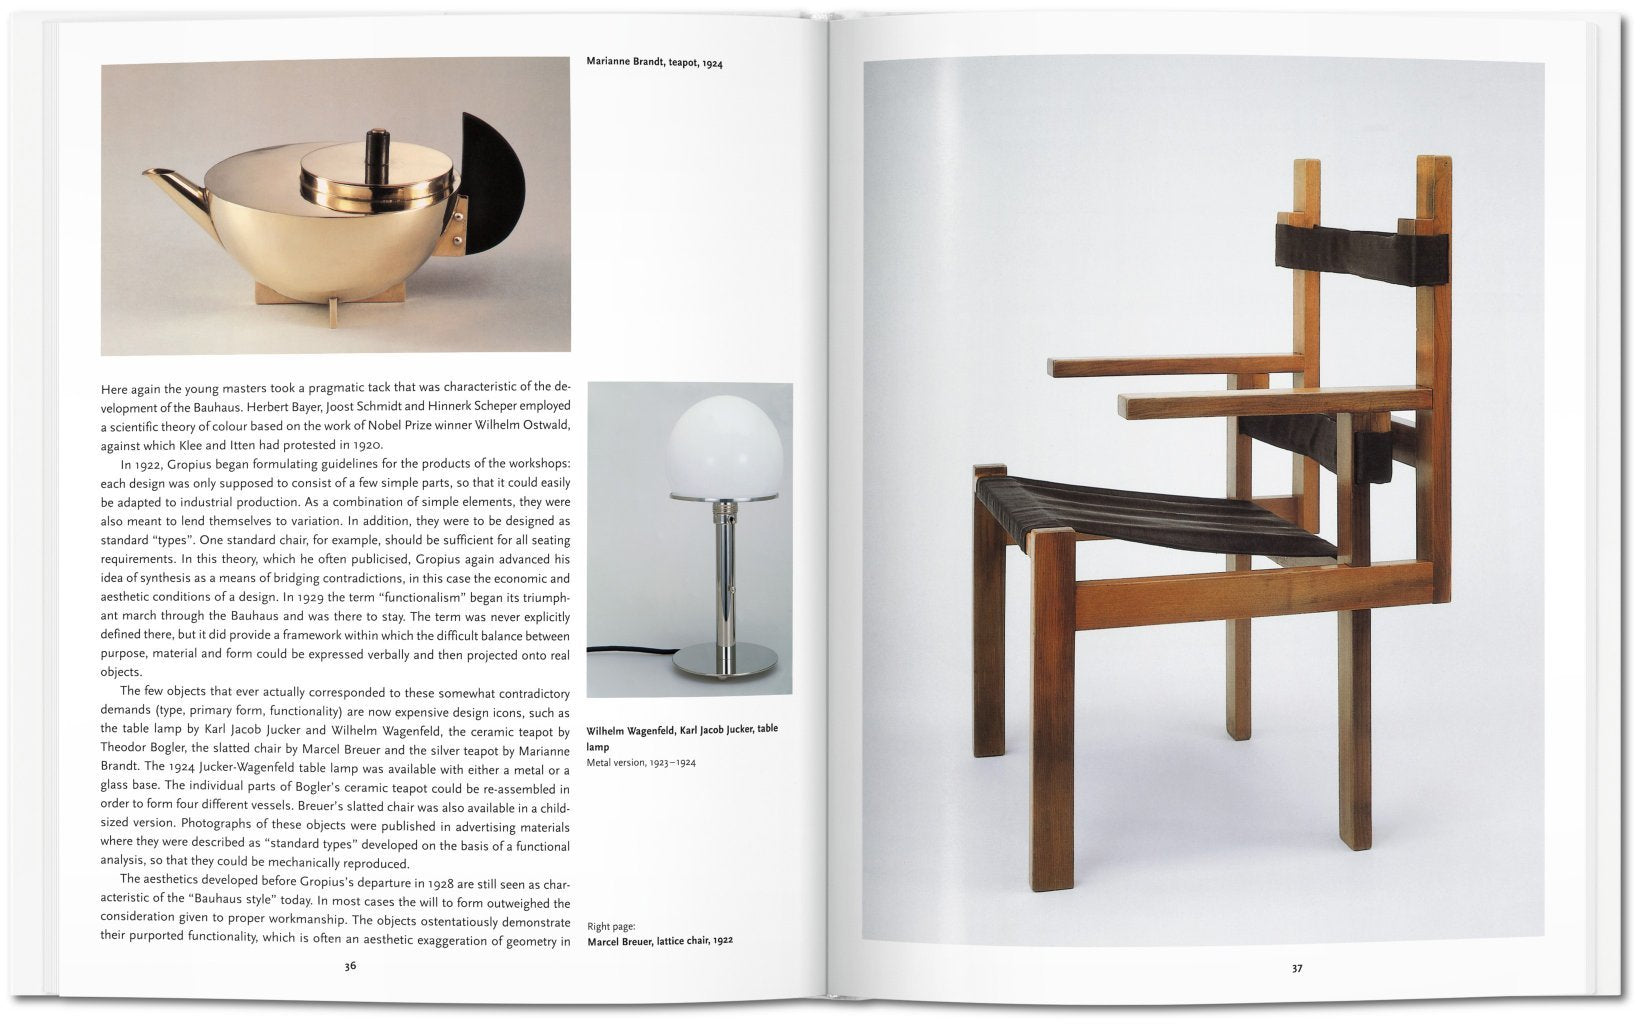 Bauhaus - Basic Art Series